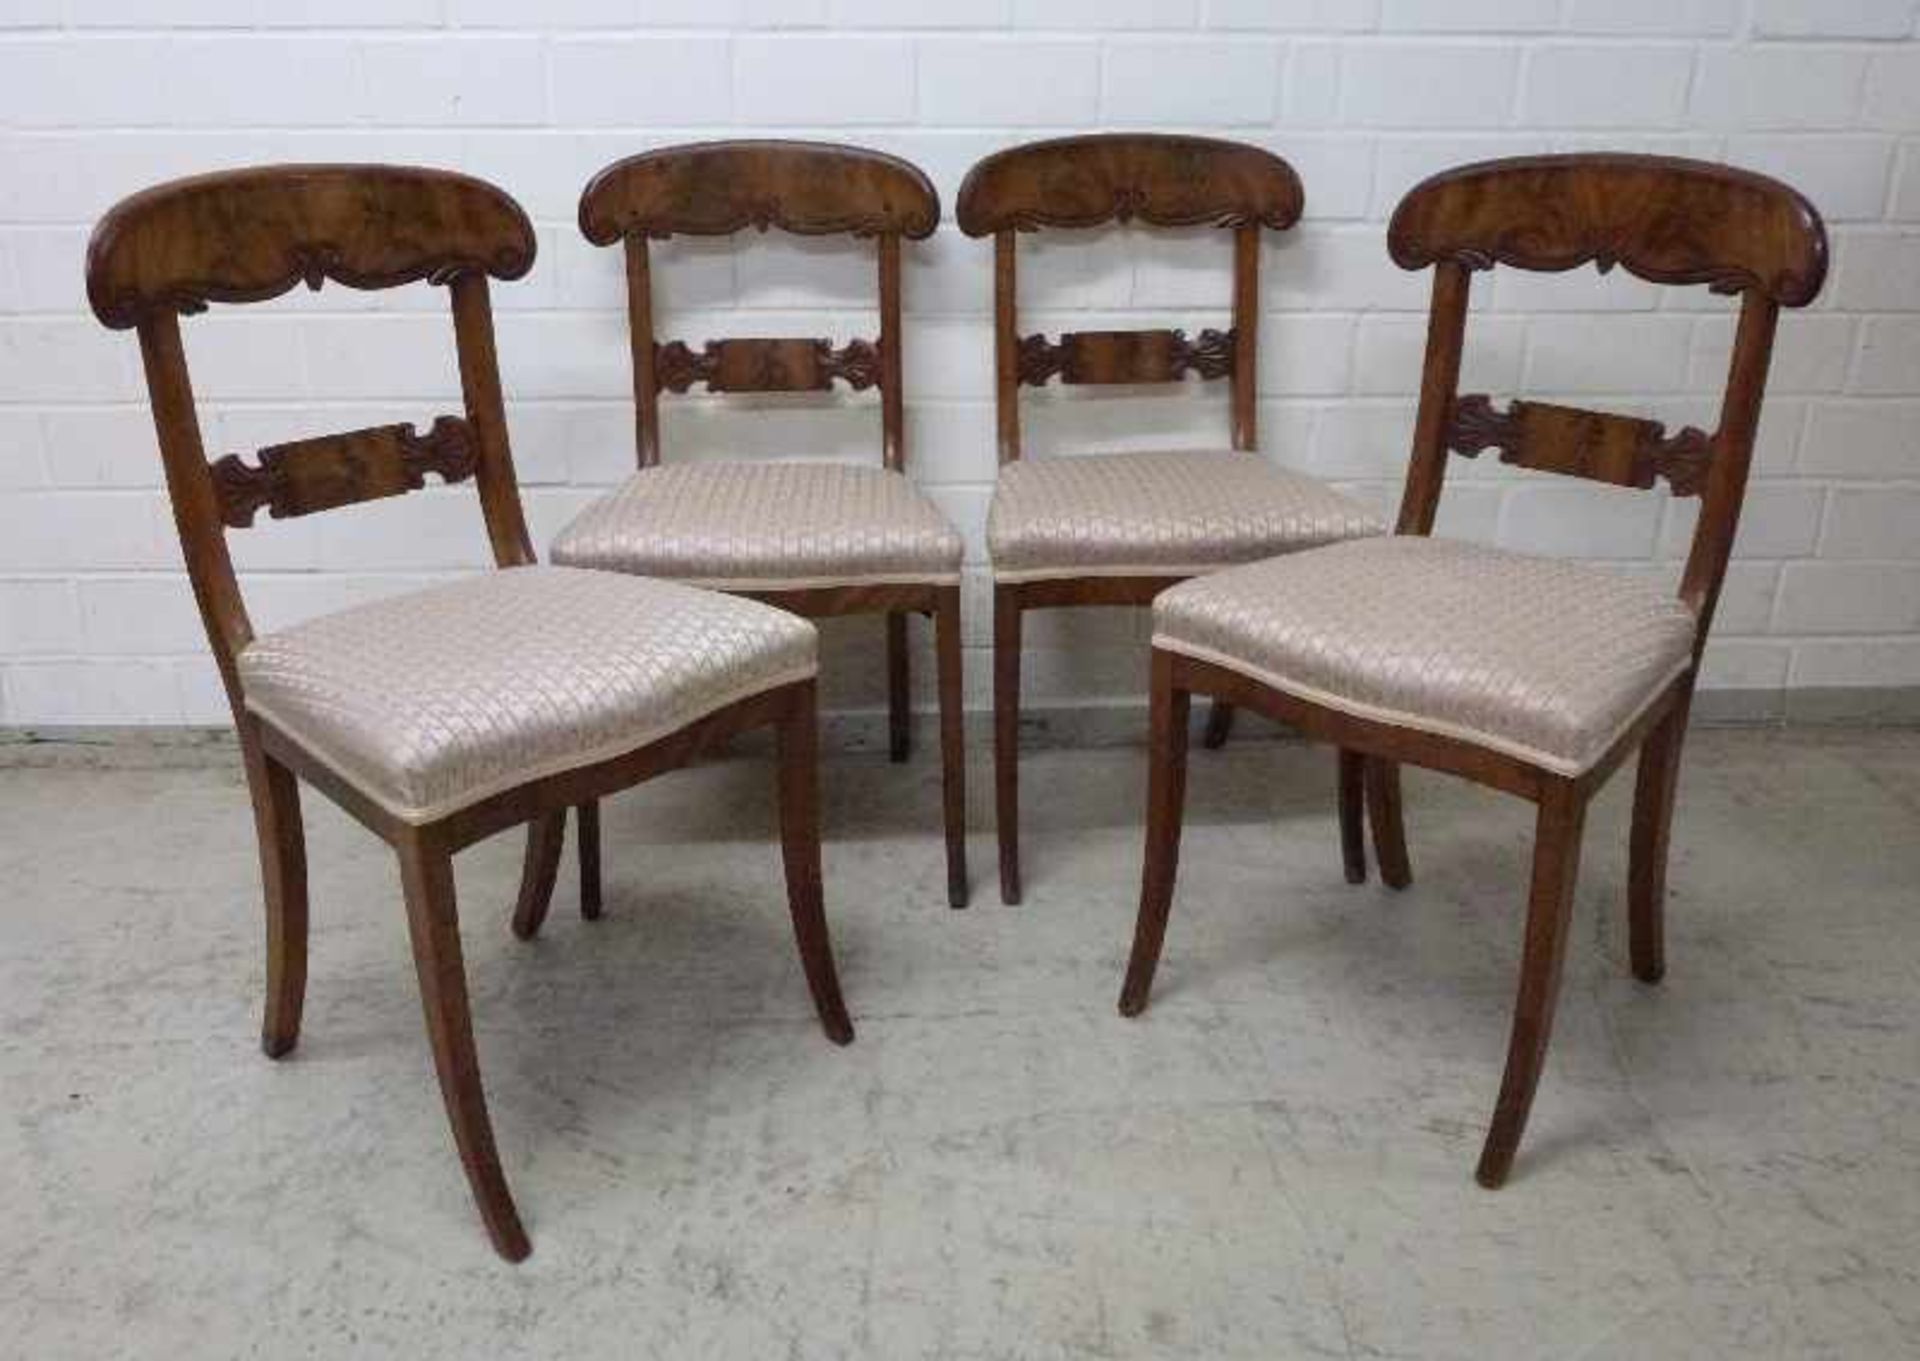 4 Biedermeier-Stühle, um 1830 Mahagoni, Säbelbeine, gebogenes, geschweiftes Lehnbrett- und Strebe, - Bild 2 aus 4